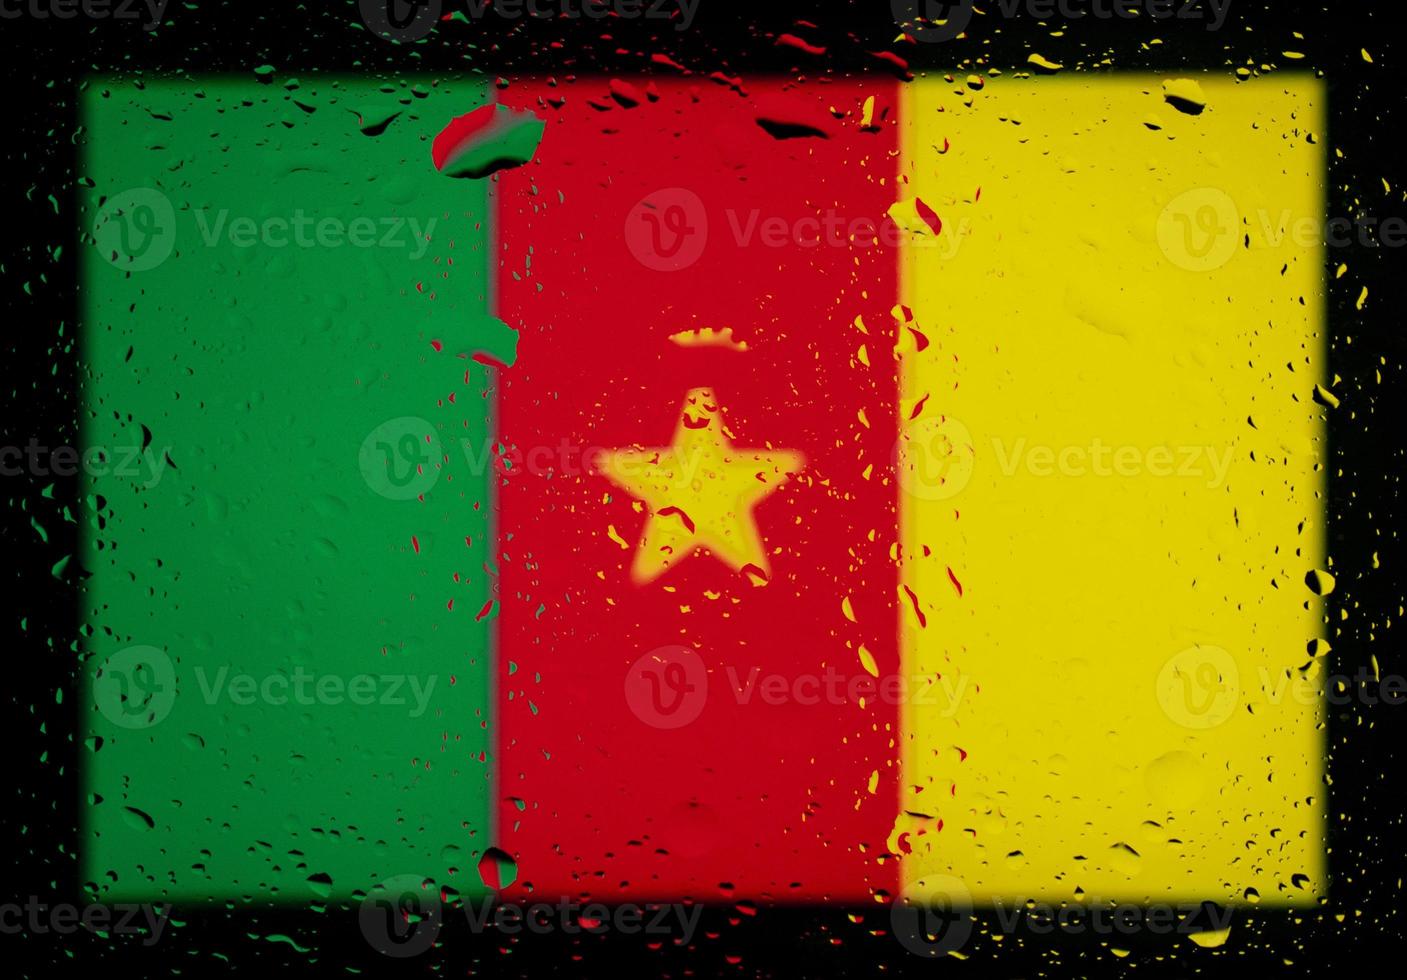 droppar vatten på Kamerun flagga bakgrund. kort skärpedjup. selektiv fokusering. tonad. foto